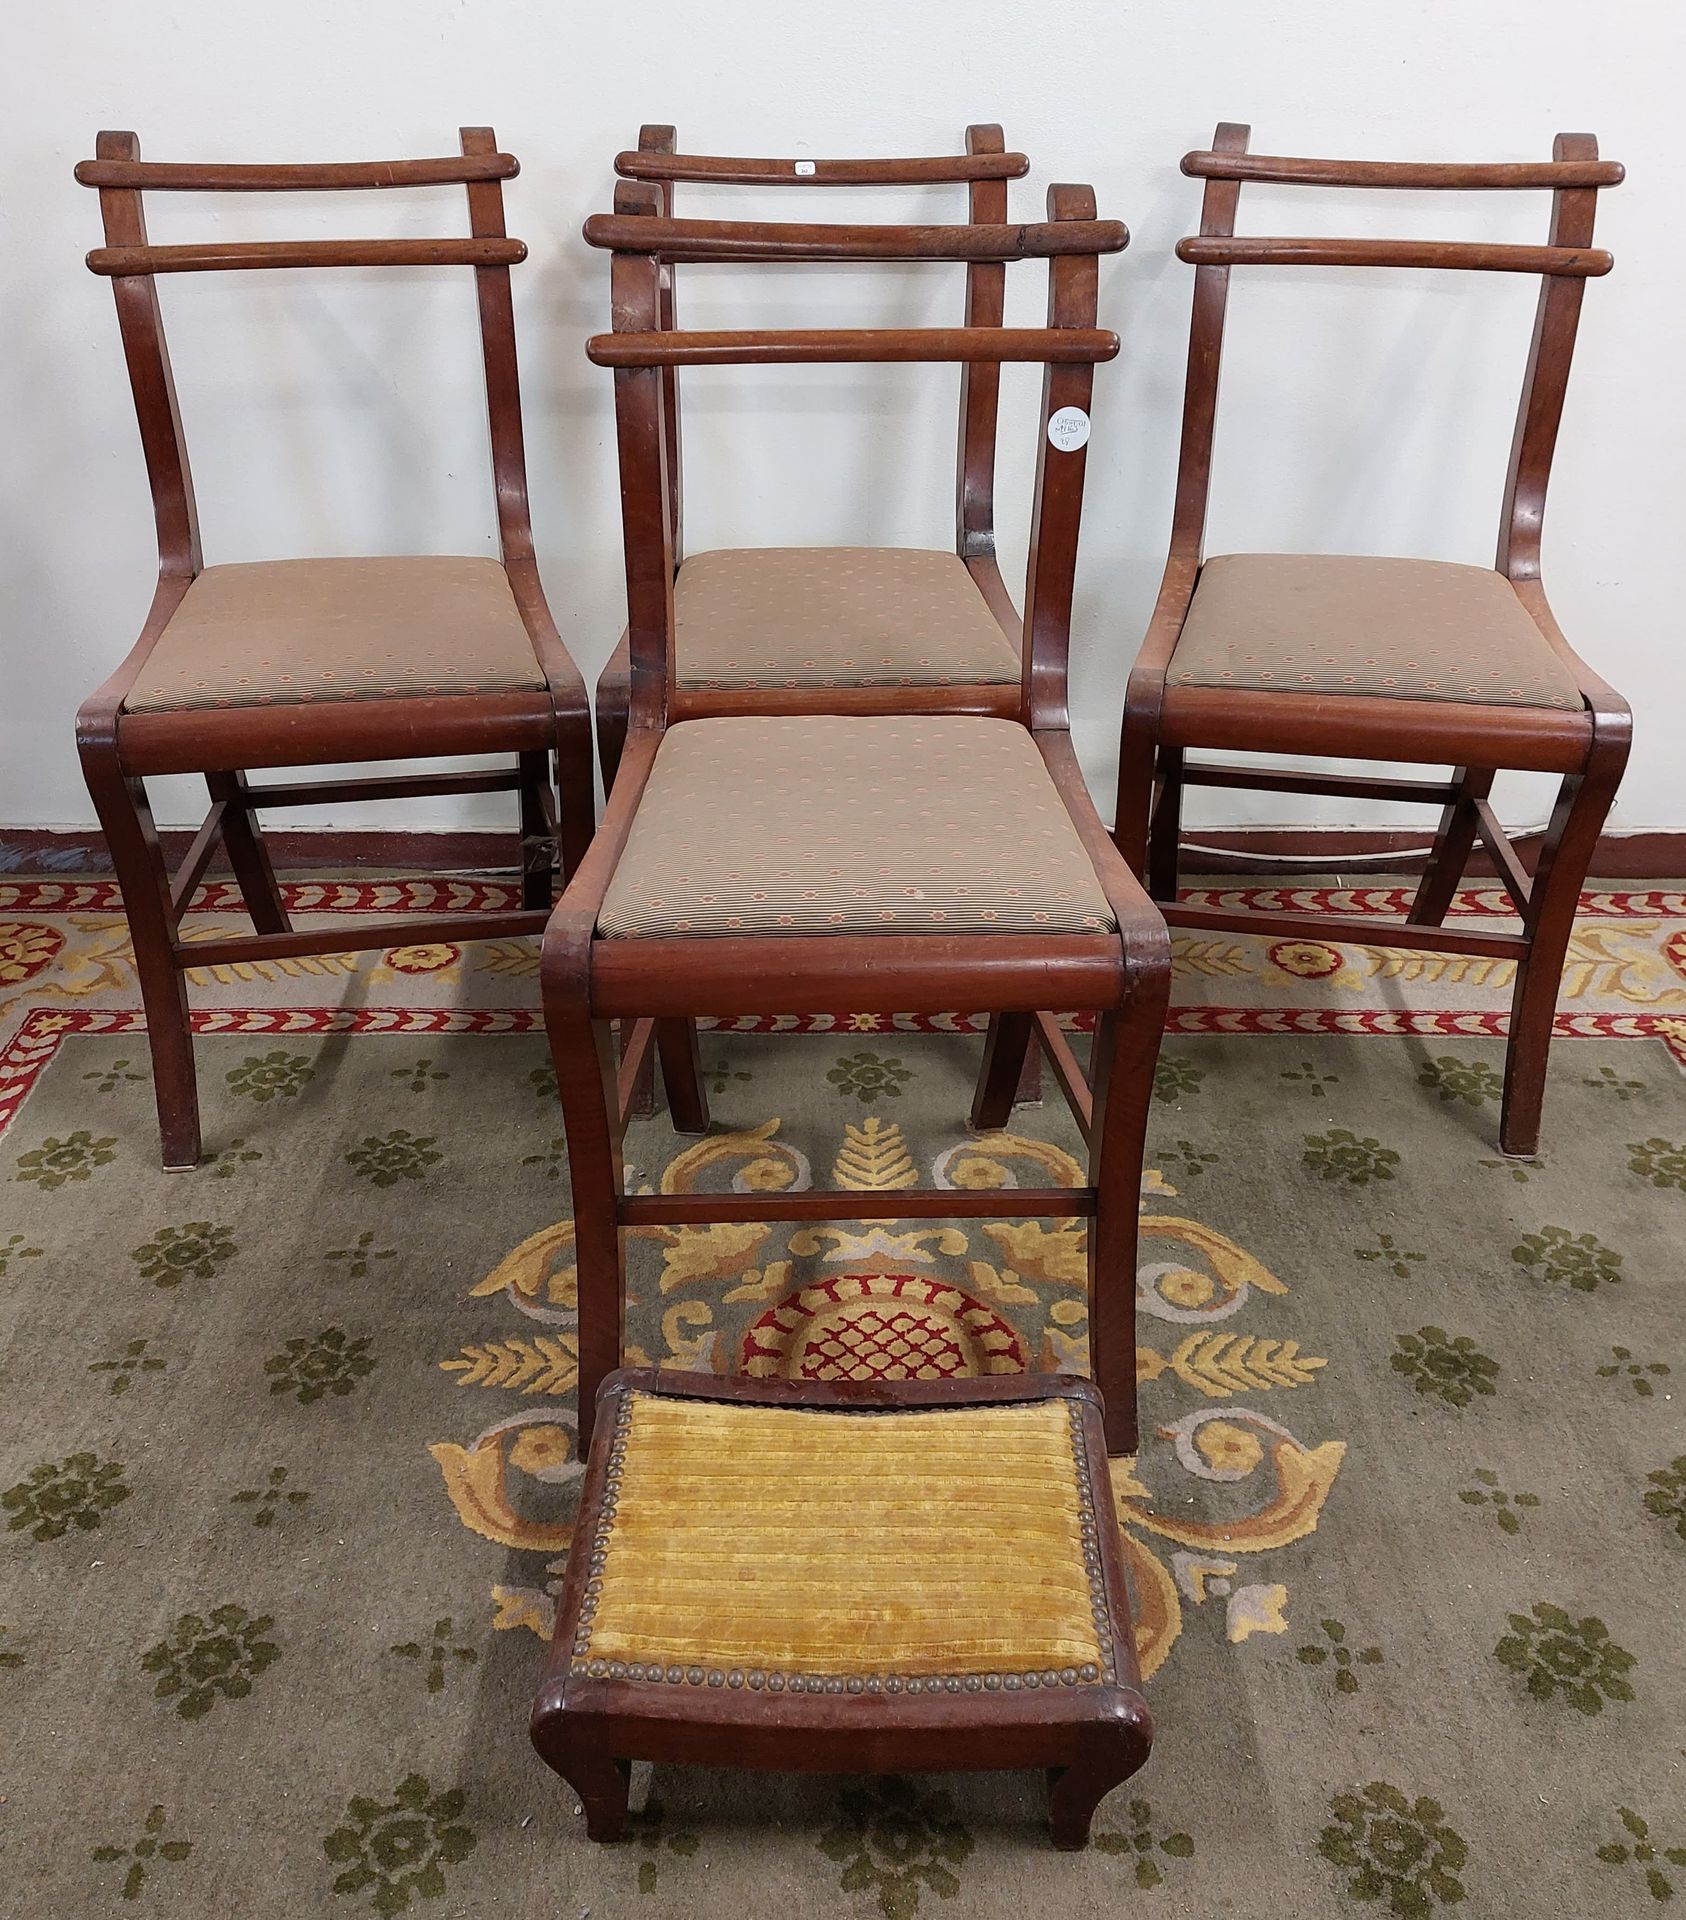 Null Série de quatre chaises en acajou et un tabouret 

XIXe siècle

(accidents)